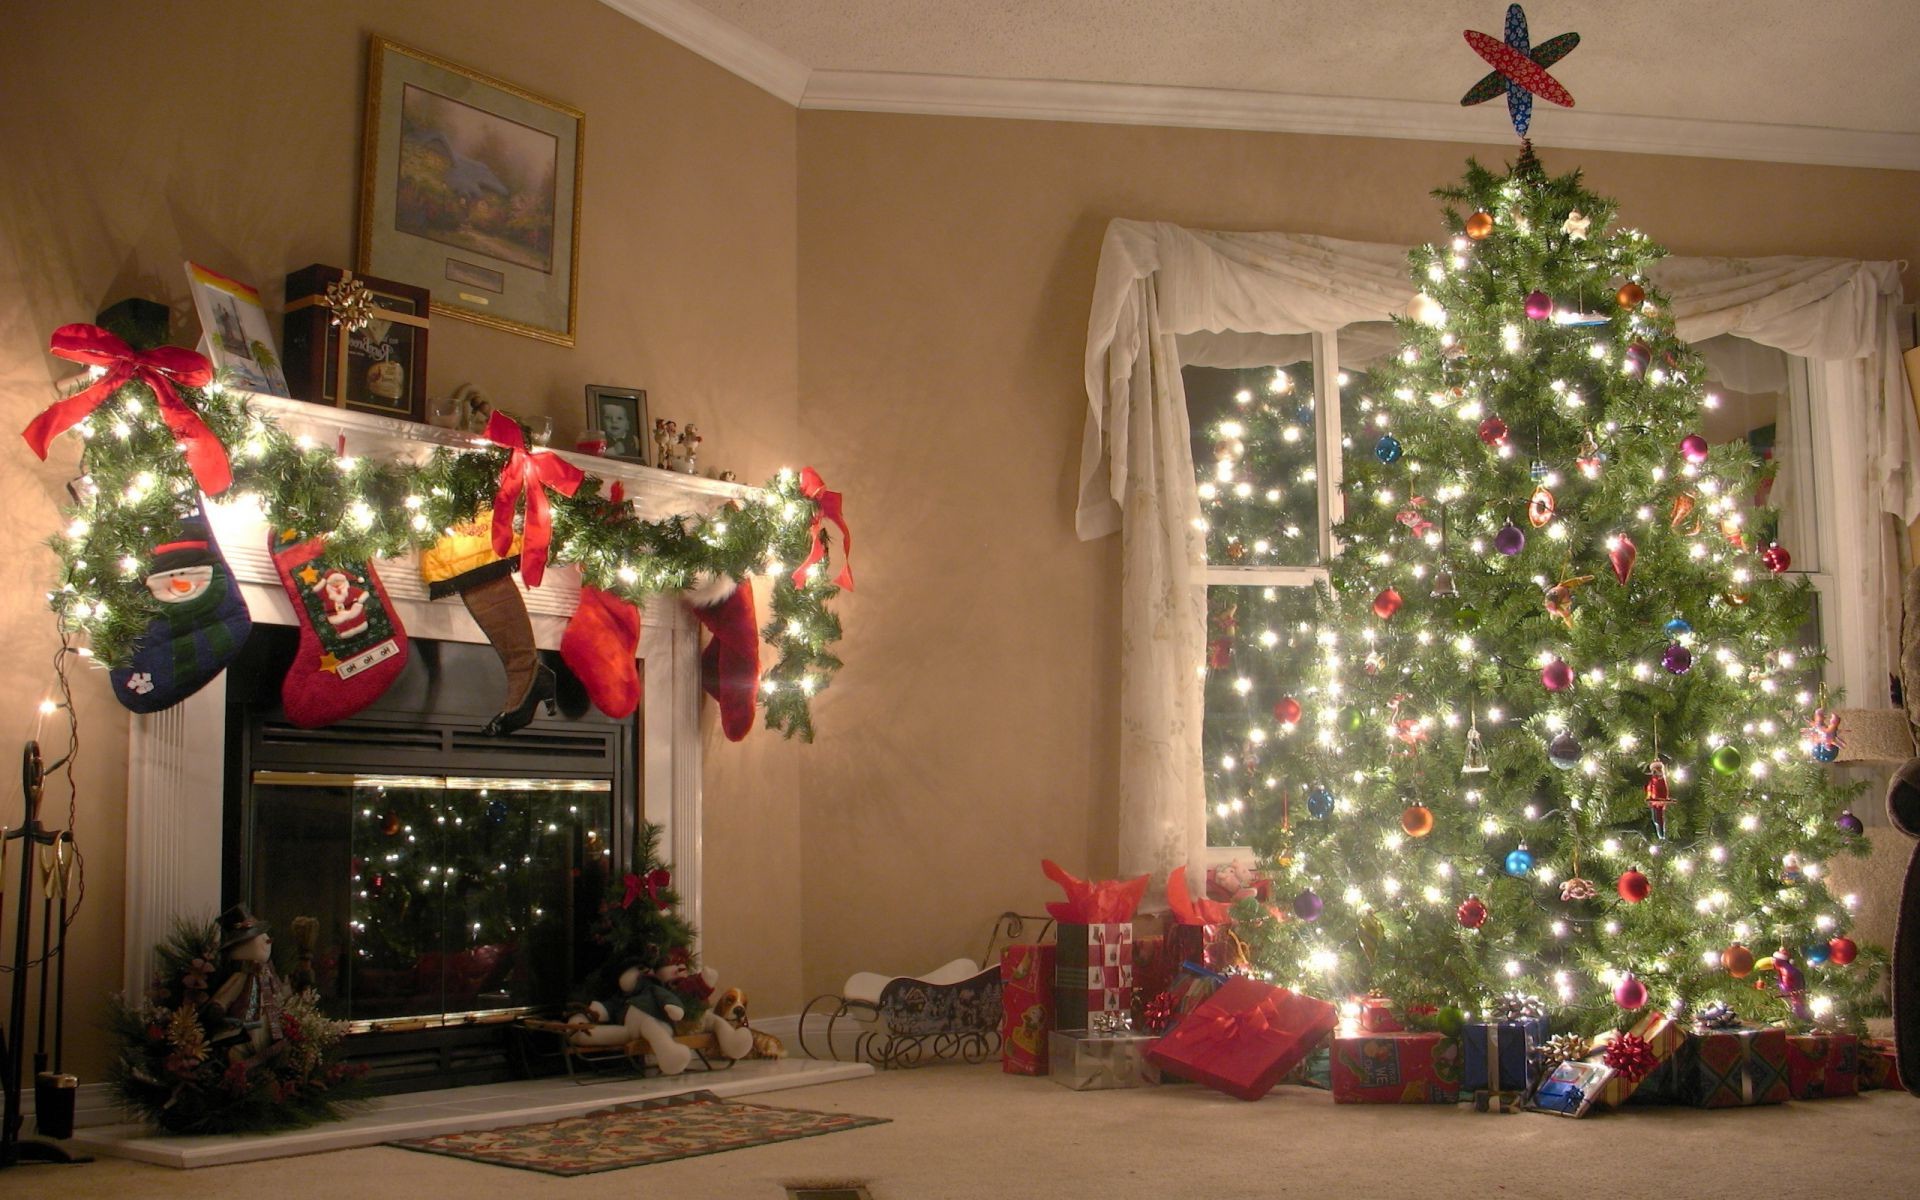 壁炉旁的大圣诞树